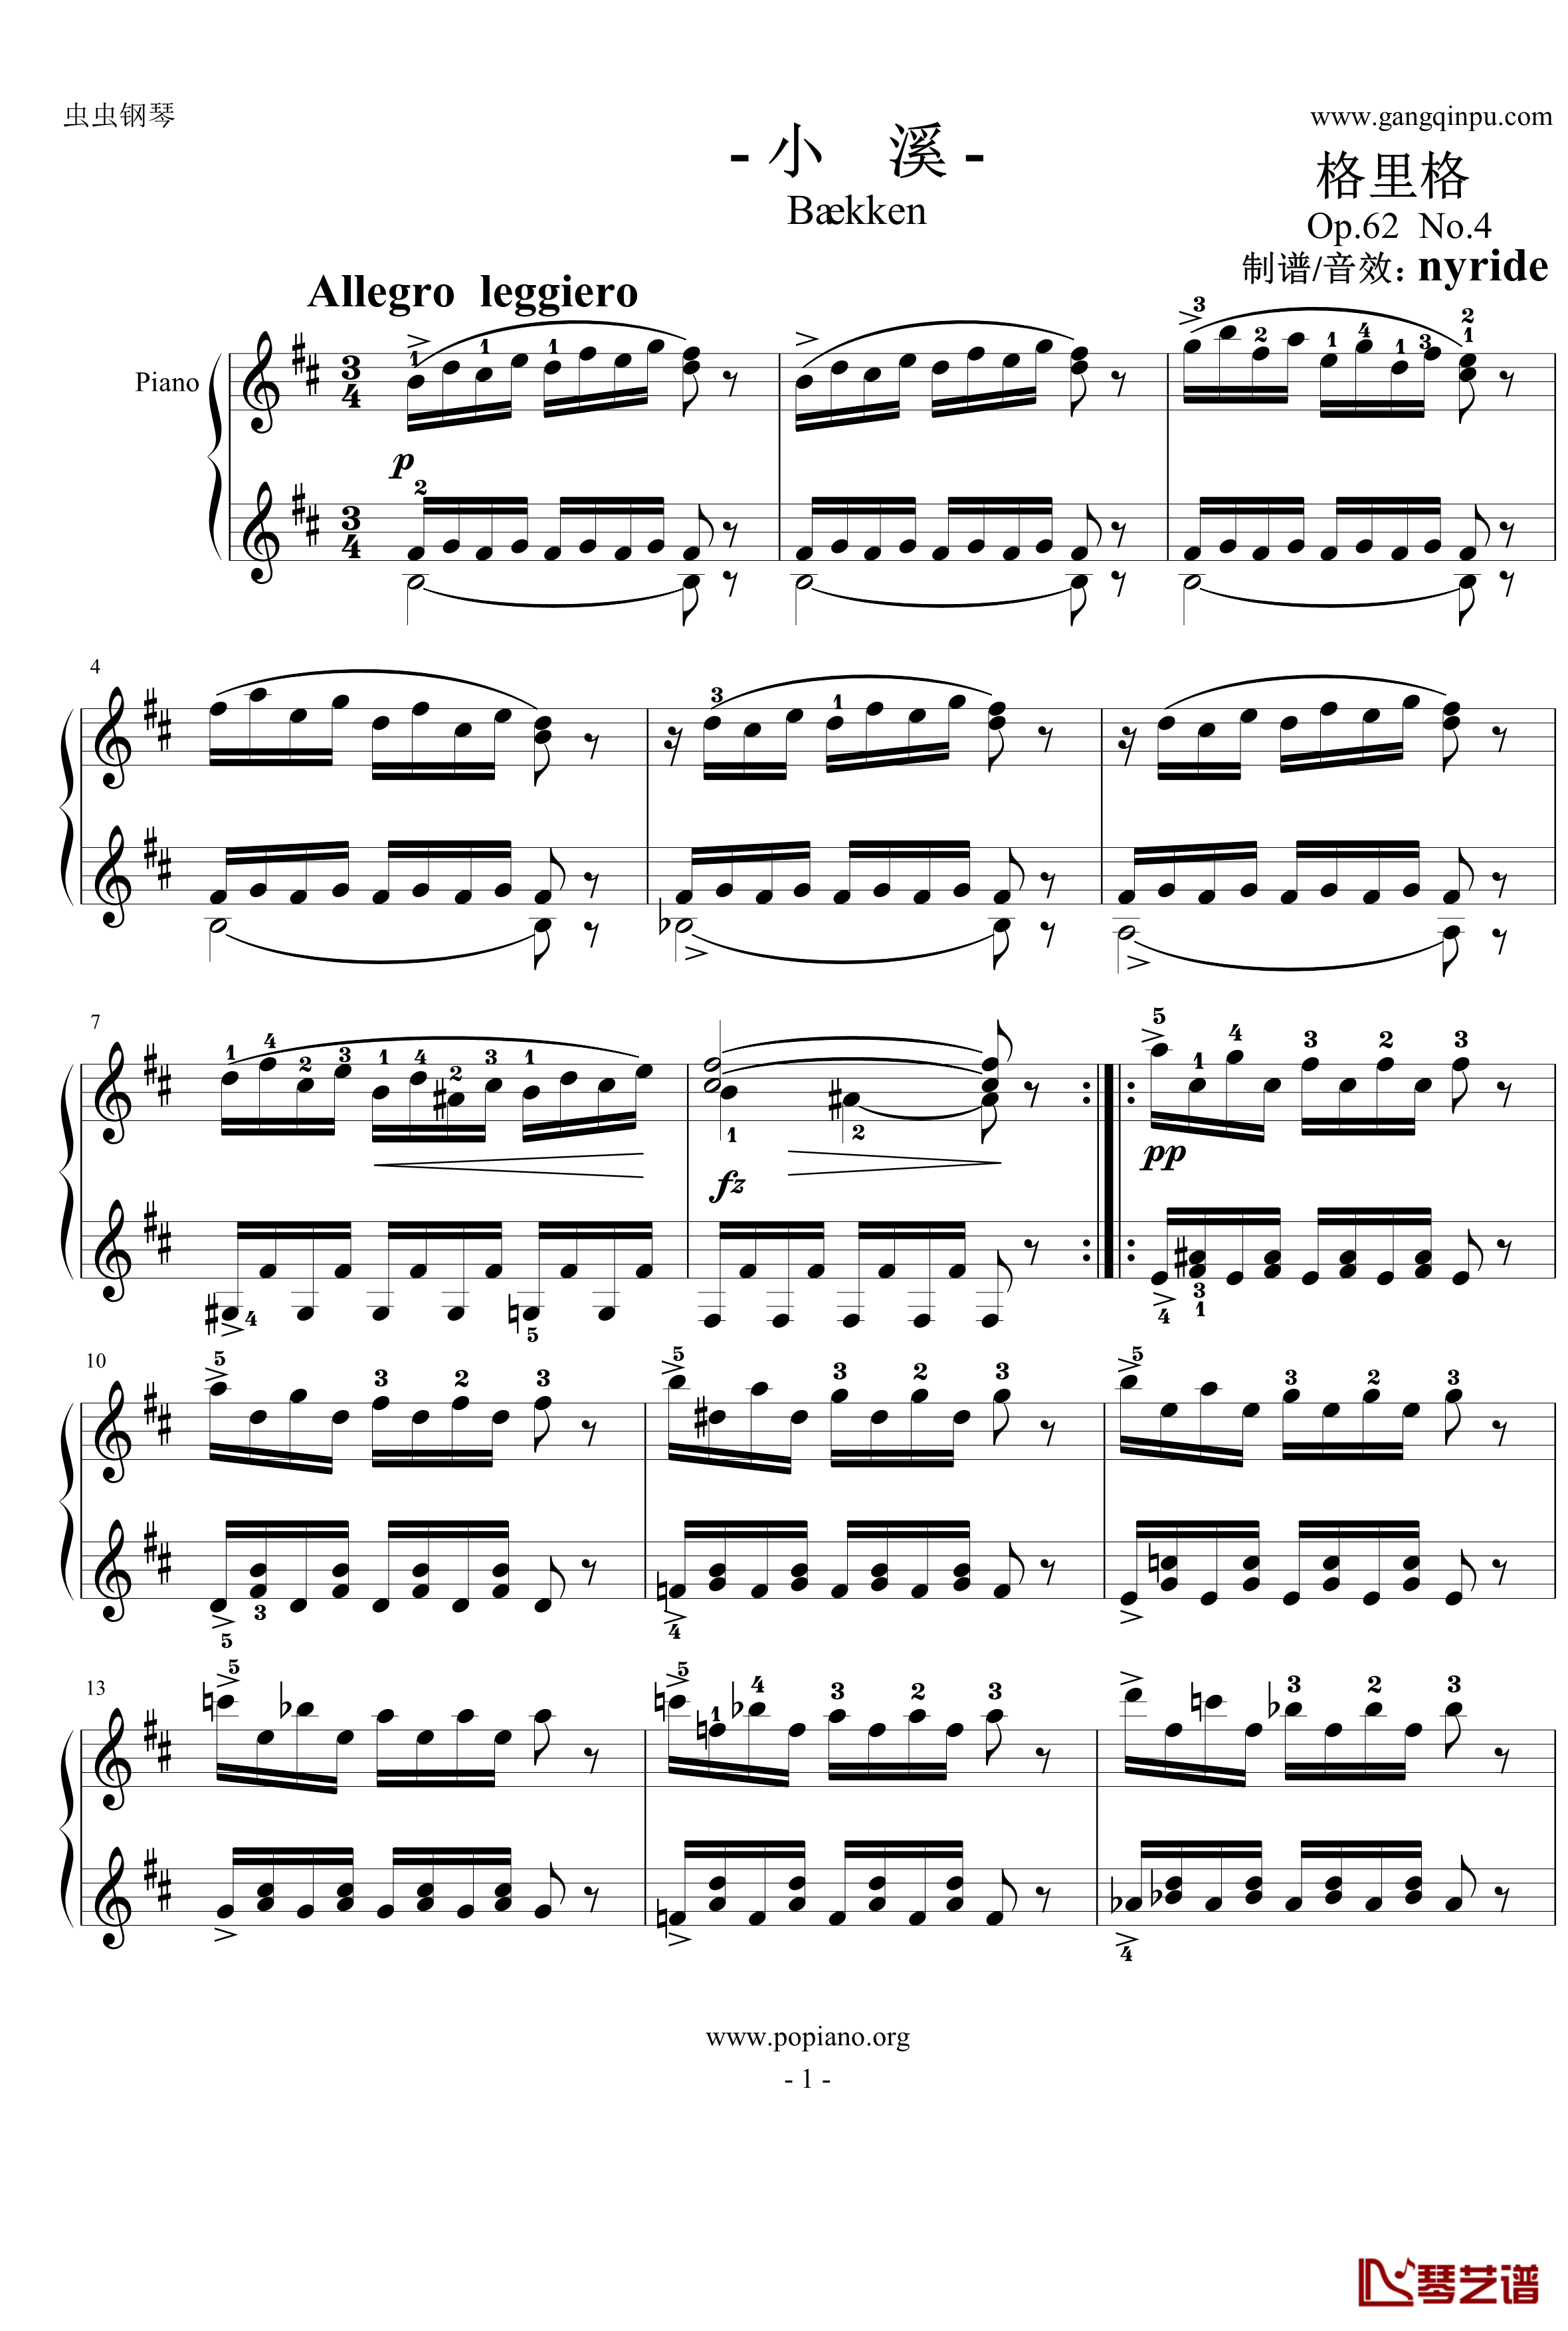 小溪钢琴谱-nyride-格里格1